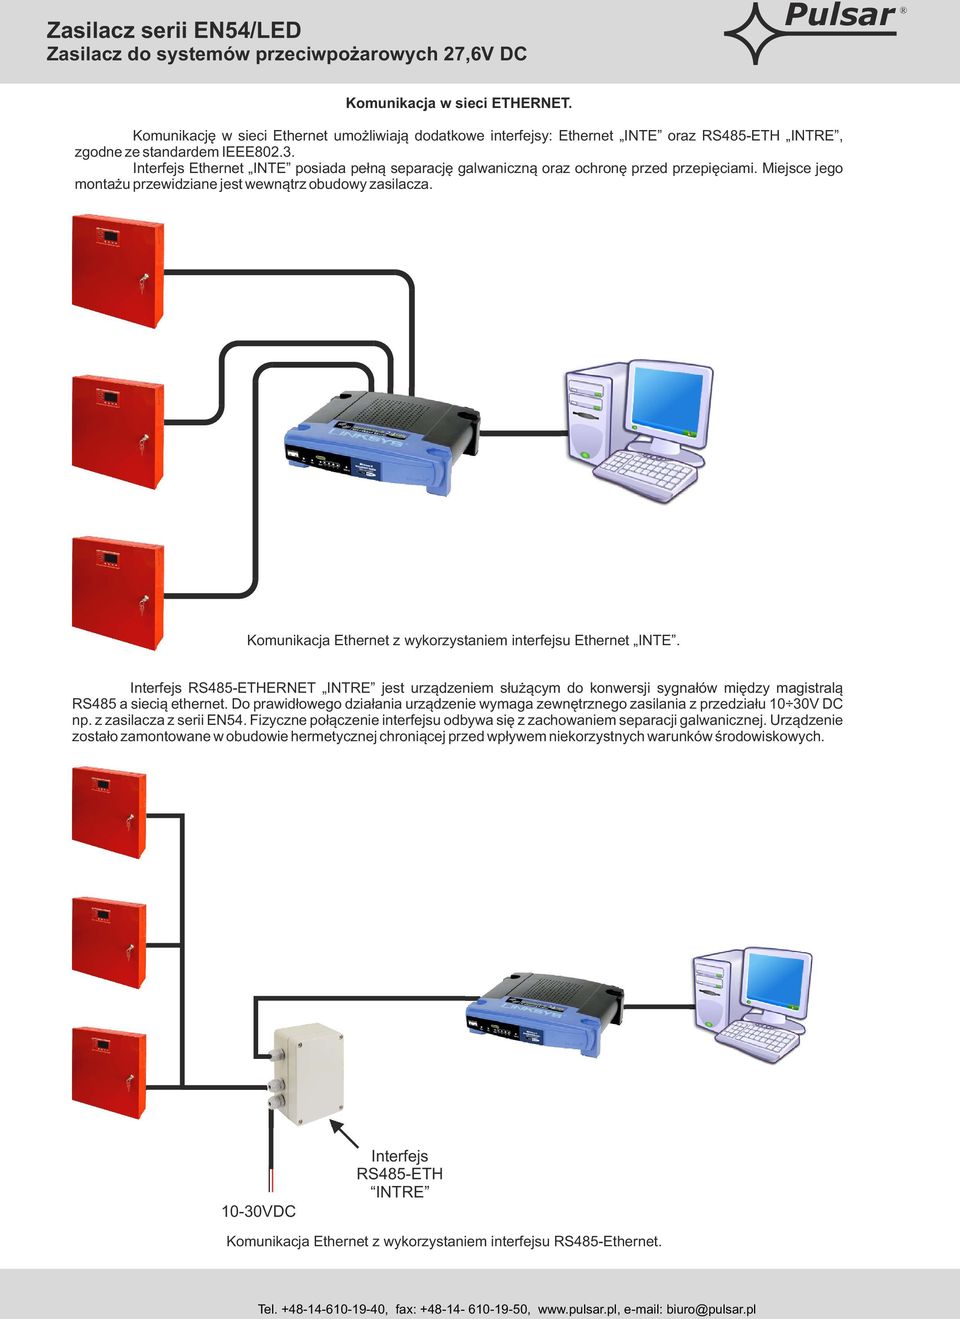 Komunikacja Ethernet z wykorzystaniem interfejsu Ethernet INTE. Interfejs RS485-ETHERNET INTRE jest urządzeniem służącym do konwersji sygnałów między magistralą RS485 a siecią ethernet.